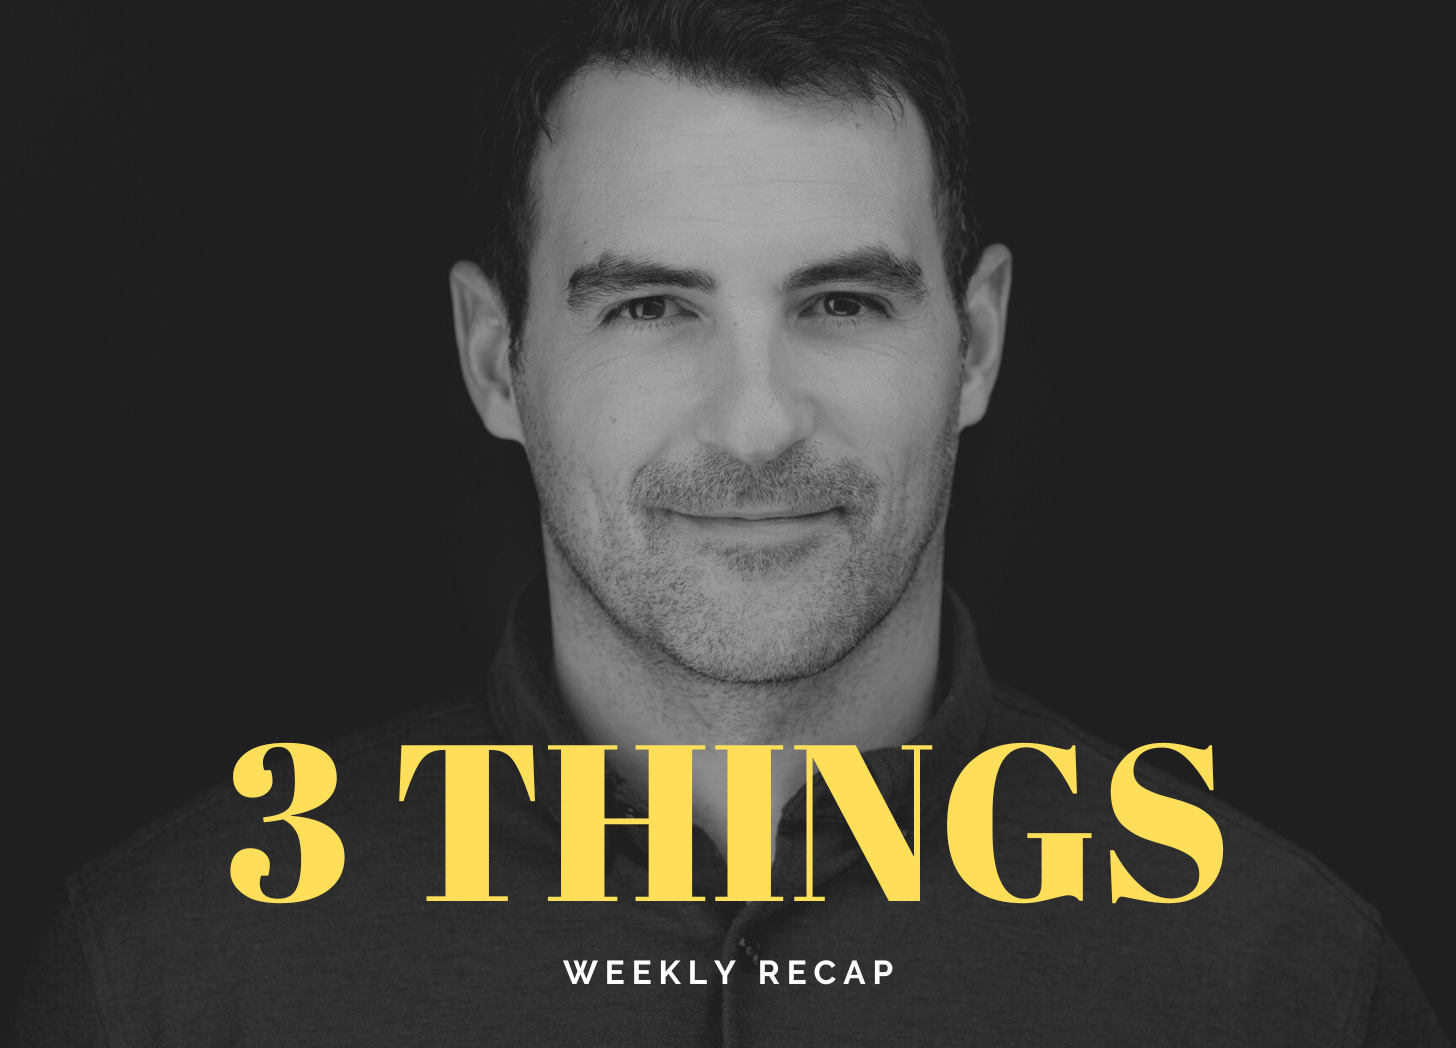 Three Things - Andrew Kooman's Weekly Recap